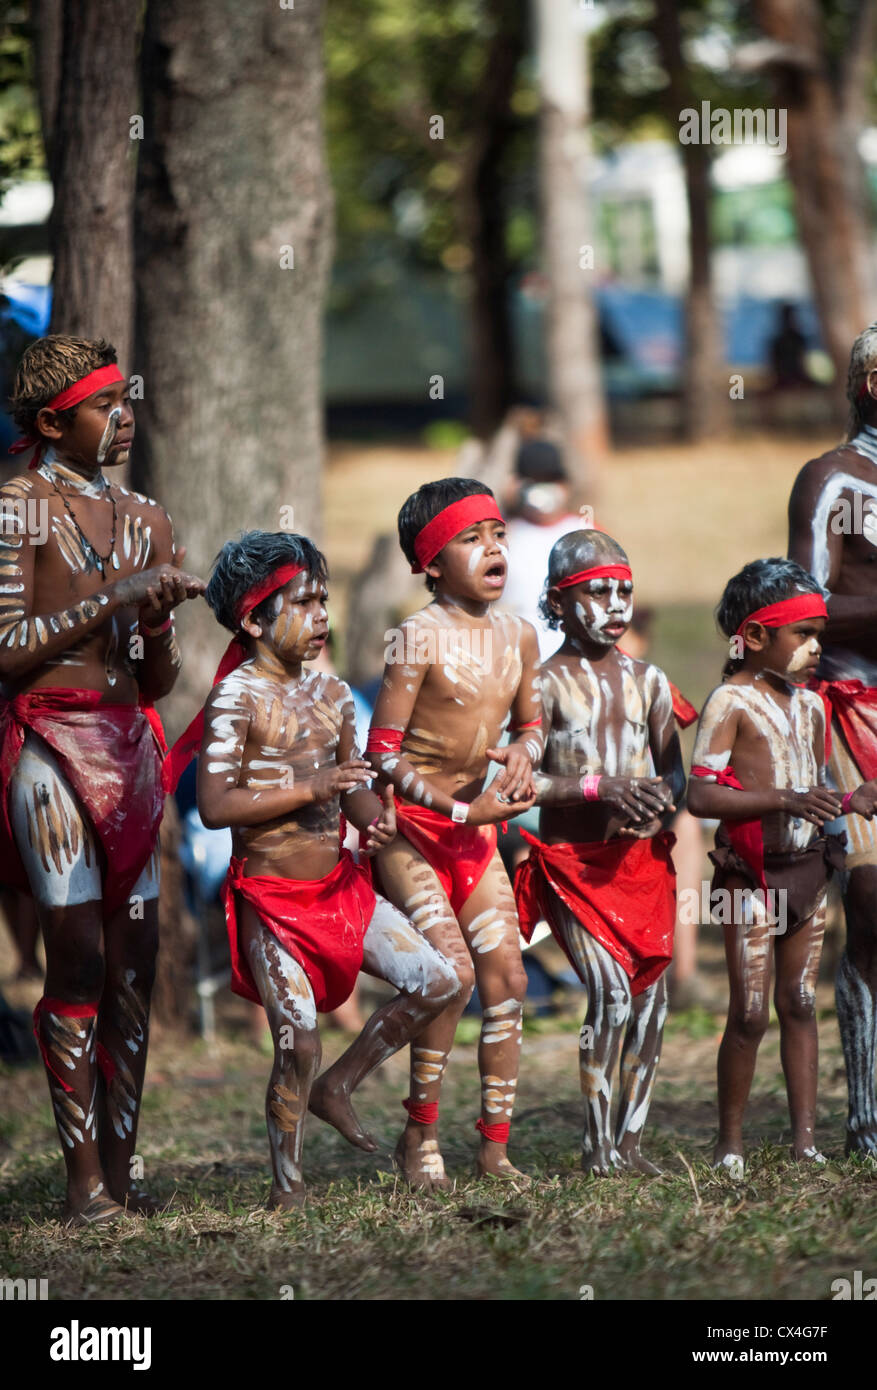 Aboriginal Clothing In Australia Aboriginal Clothing, Australian People ...